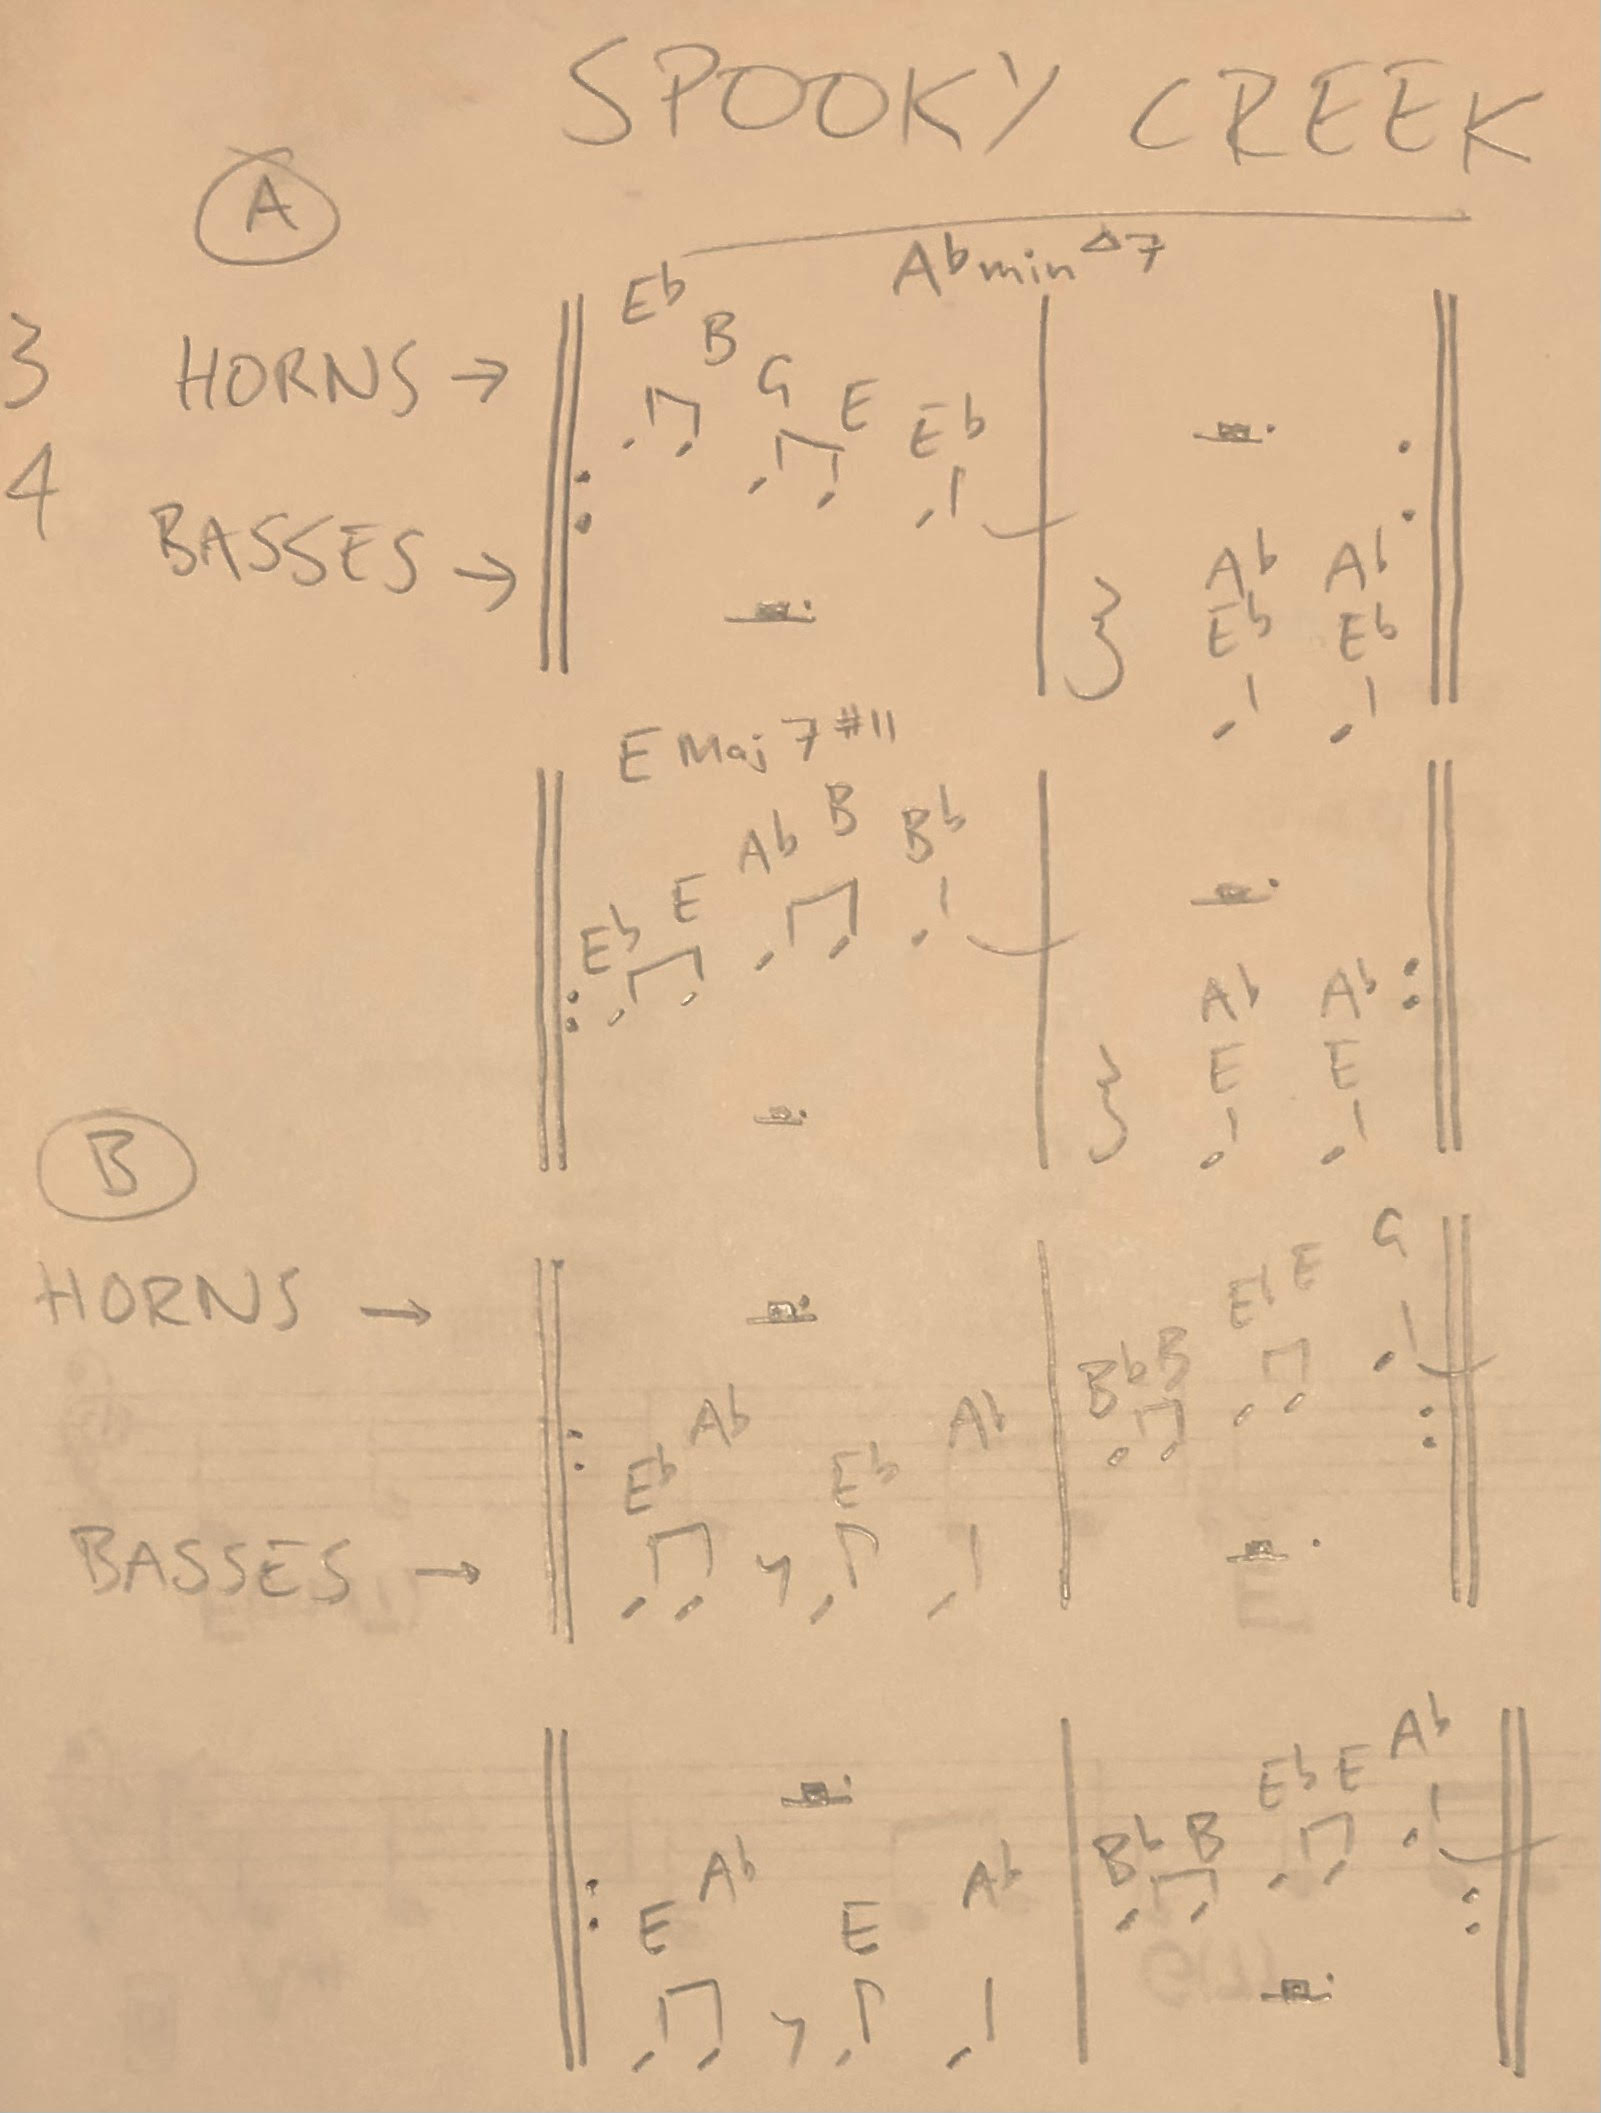 The handwritten style sheet (score)